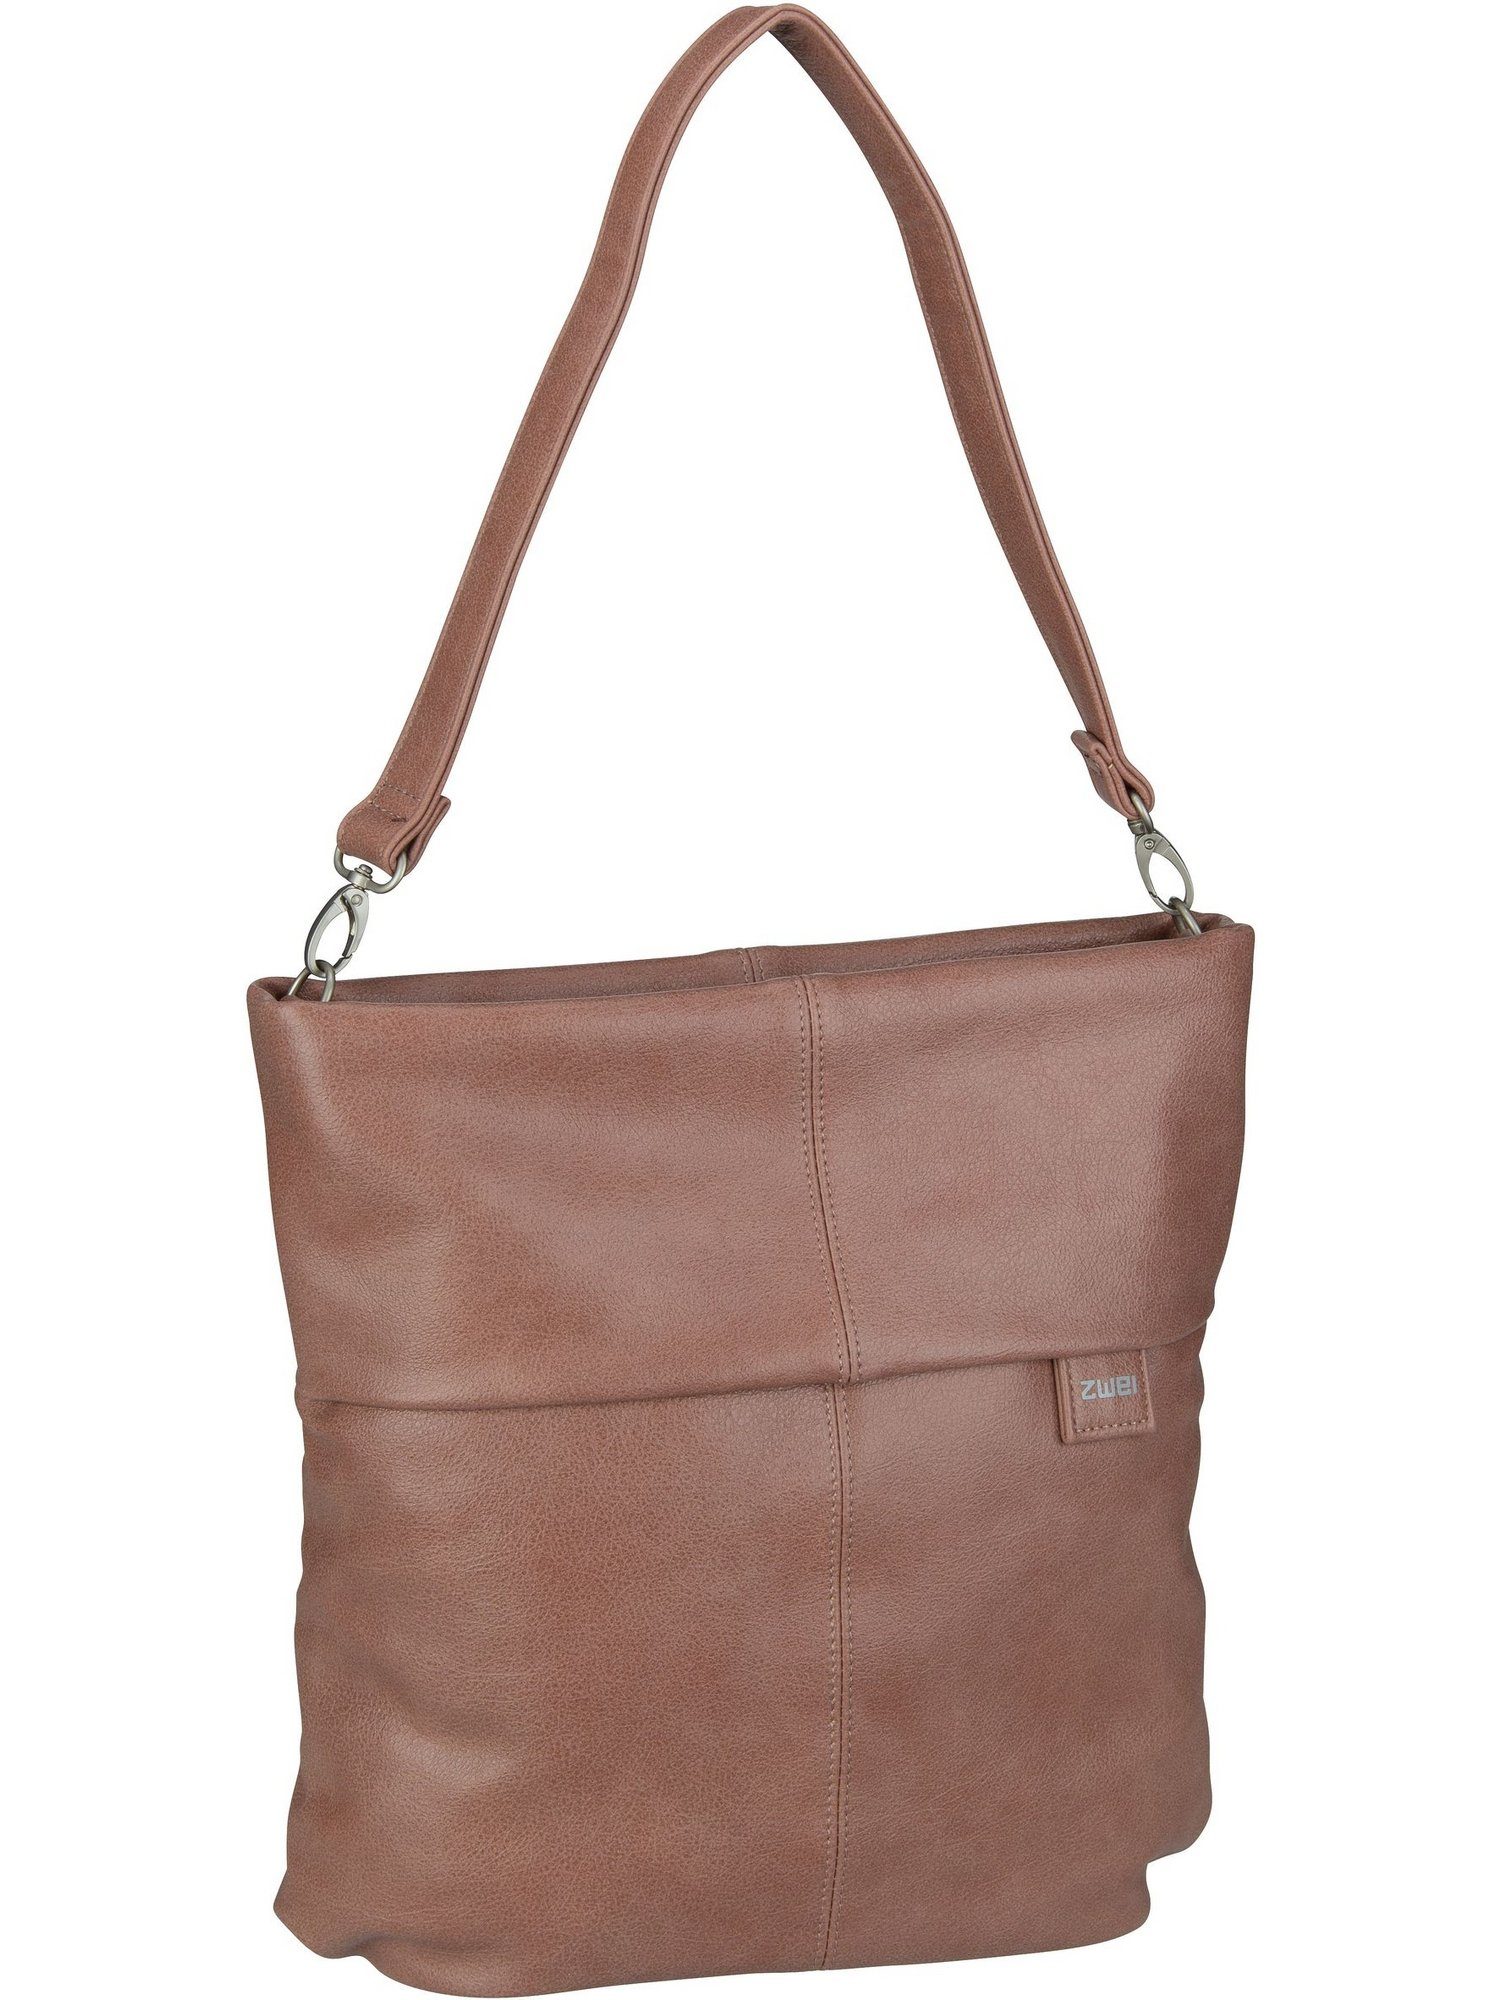 Blush Mademoiselle Bag M12, Hobo Zwei Handtasche